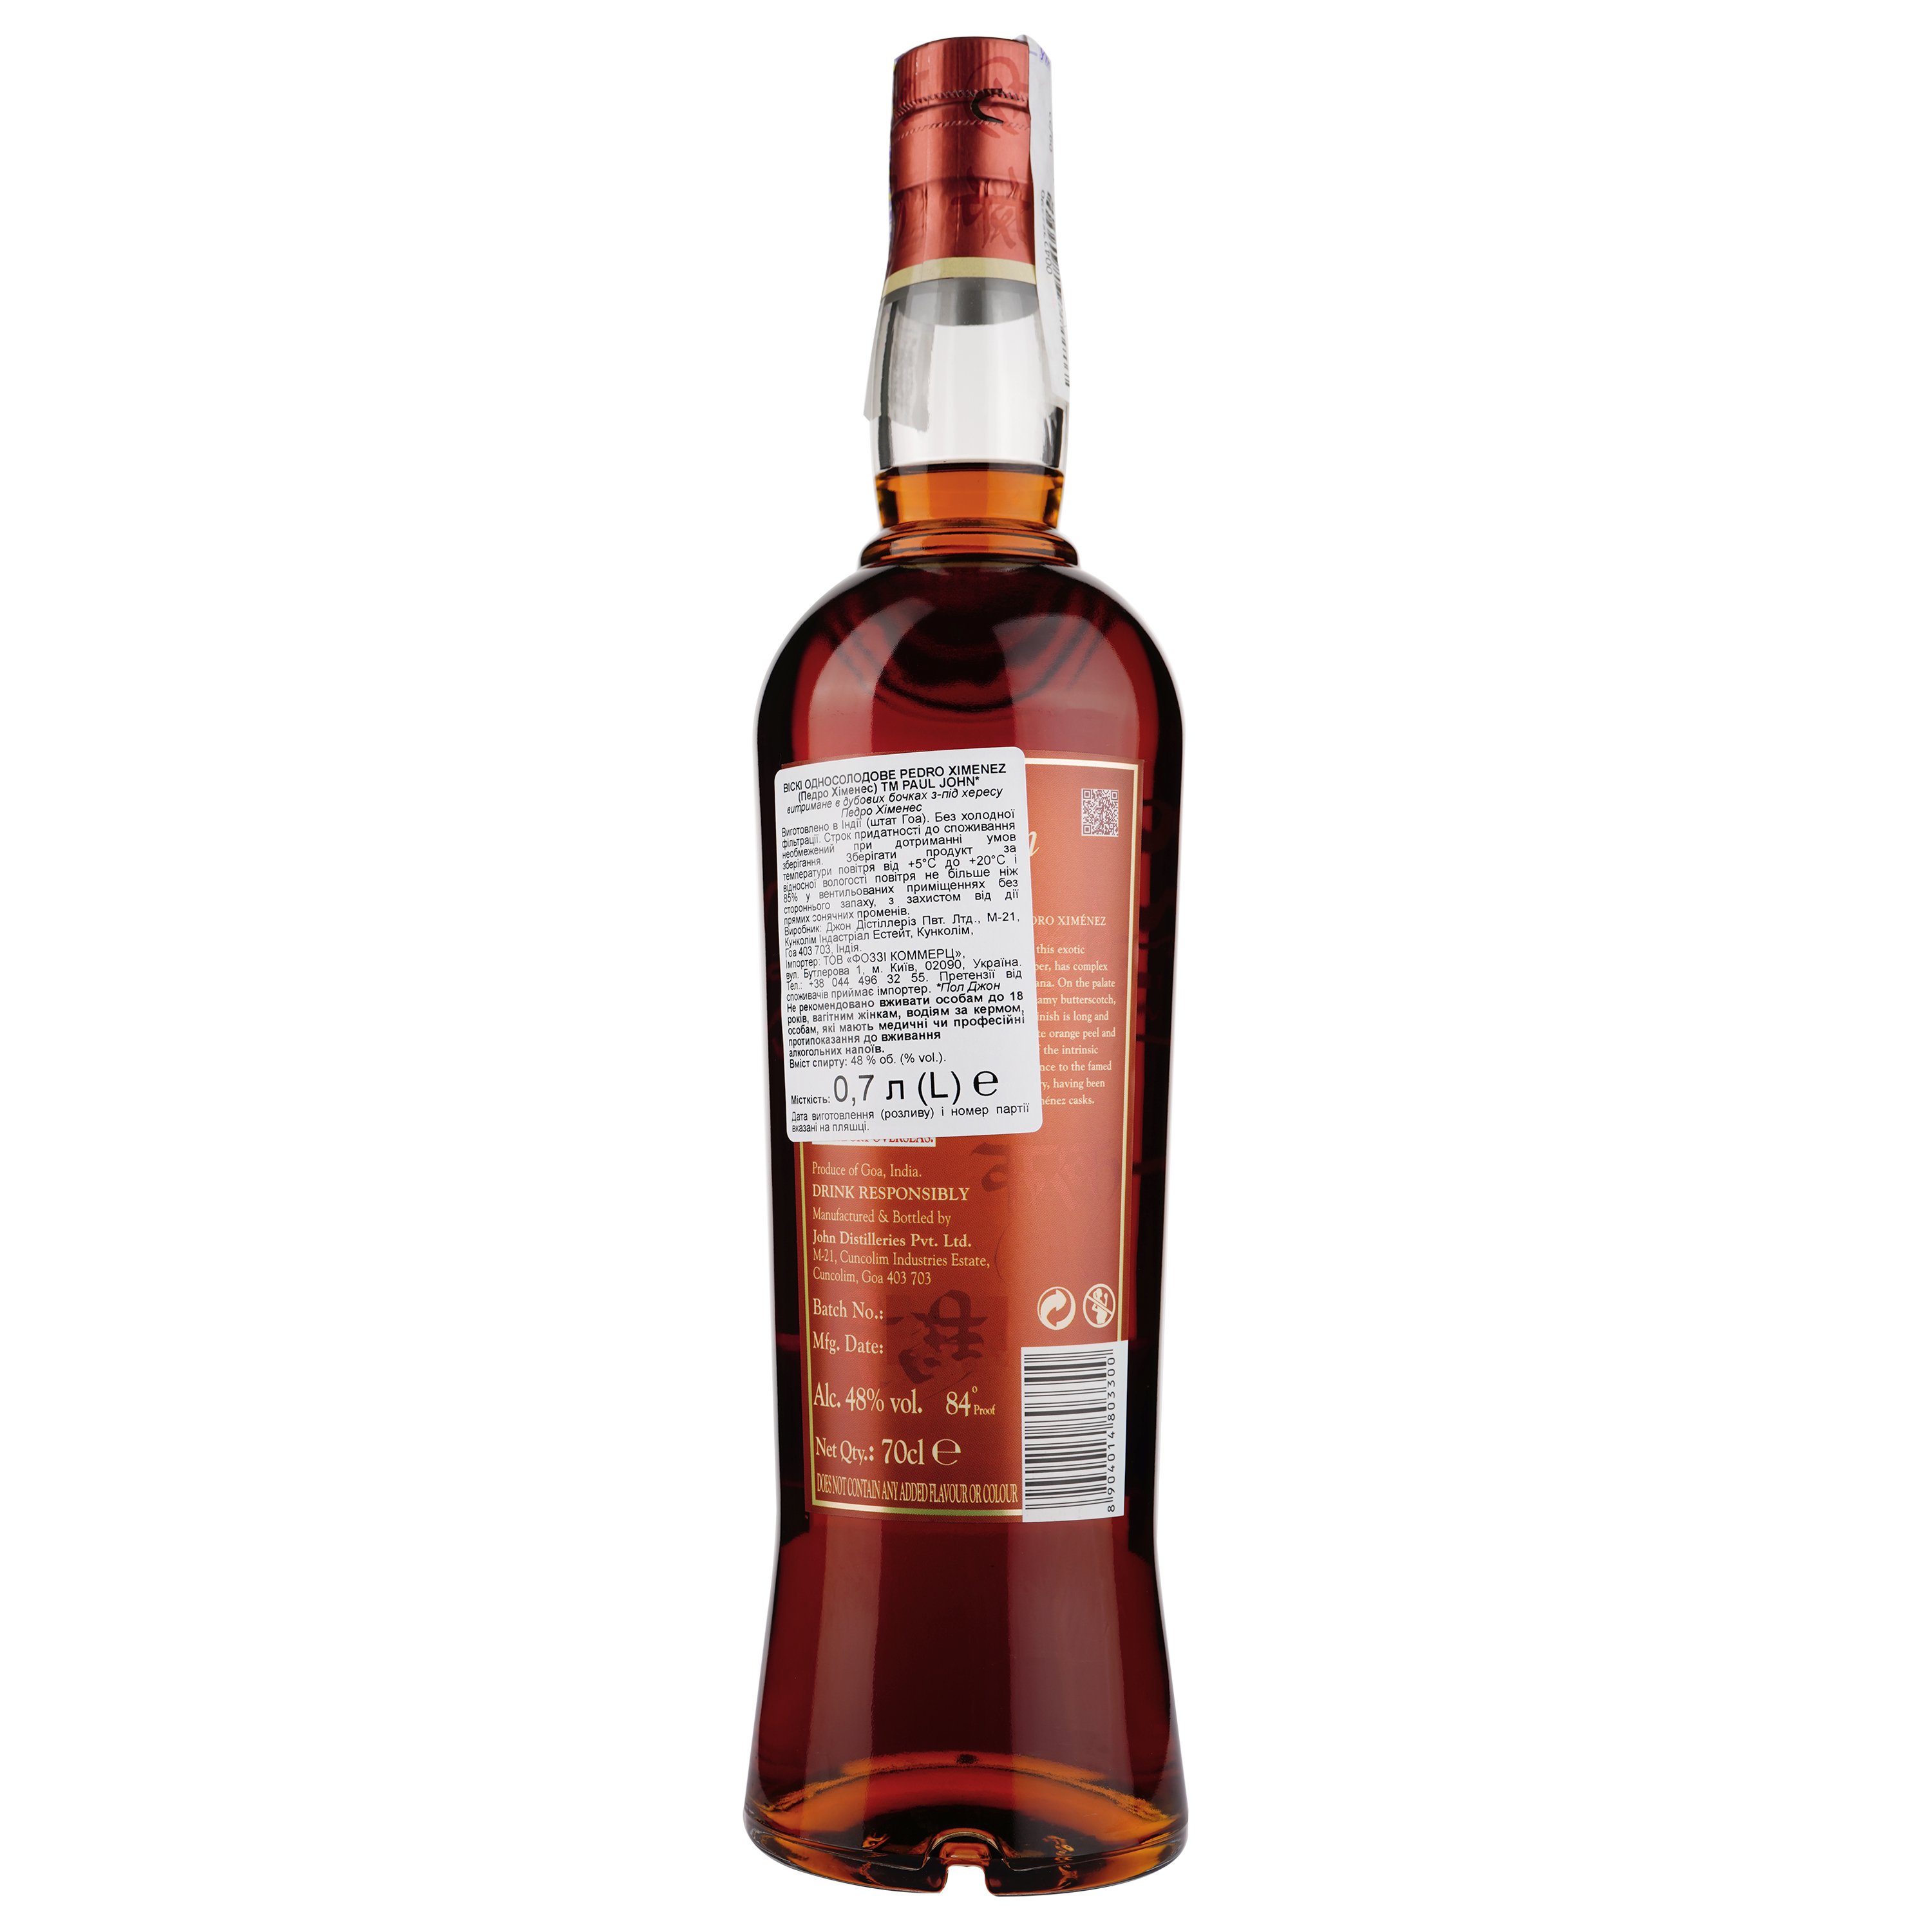 Виски Paul John Pedro Ximenez Single Malt Indian Whisky, в коробке, 48%, 0,7 л - фото 2